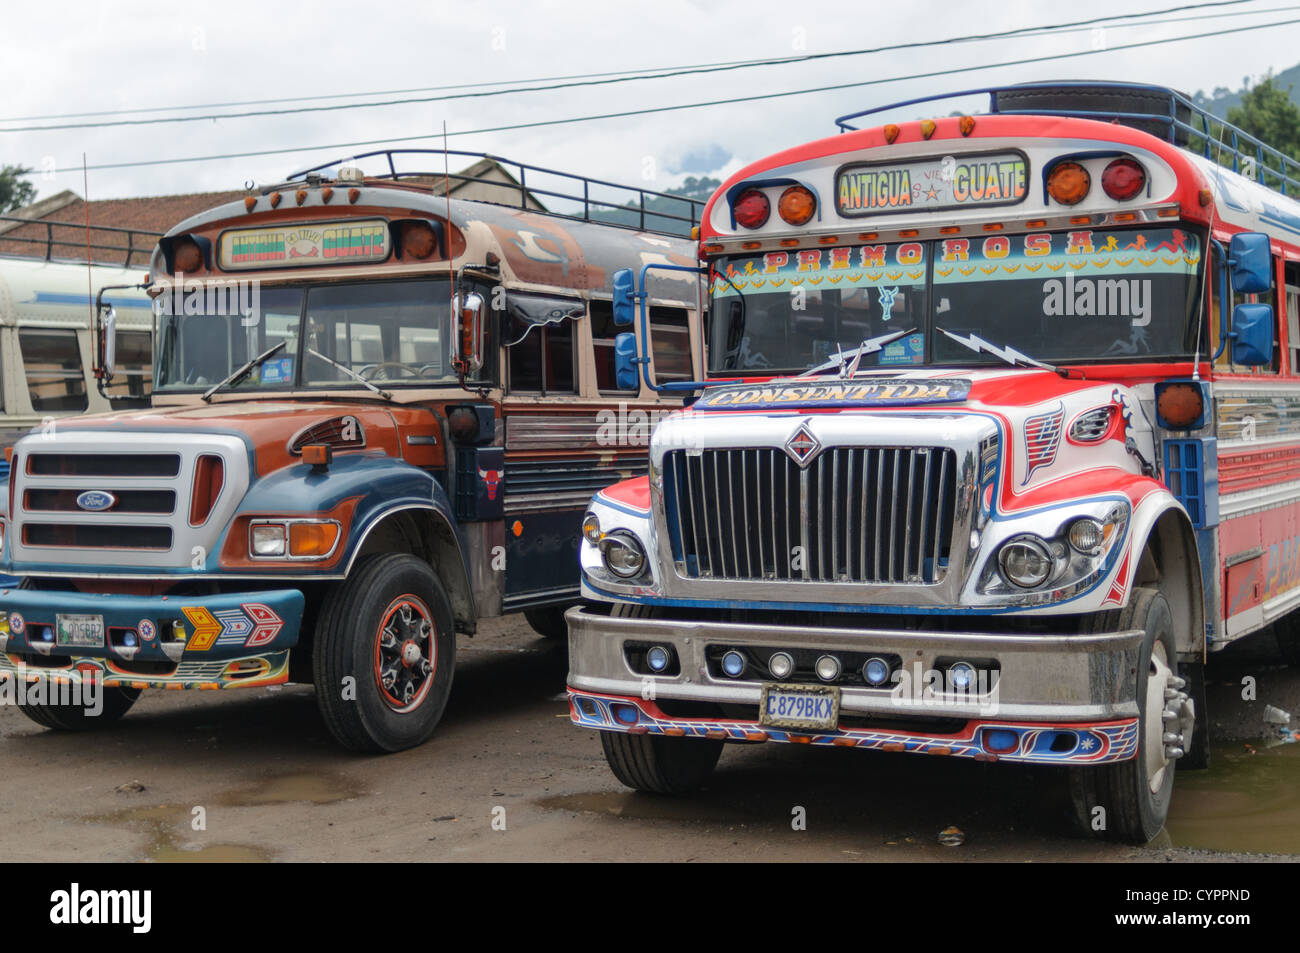 Zwei Chicken Busse hinter dem Mercado Municipal (Stadtmarkt) in Antigua, Guatemala. Aus diesem umfangreichen zentralen Busbahnhof strahlenförmig der Routen in Guatemala. Oft bunt bemalt, die Huhn-Busse sind nachgerüsteten amerikanische Schulbusse und bieten ein günstiges Transportmittel im ganzen Land. Stockfoto